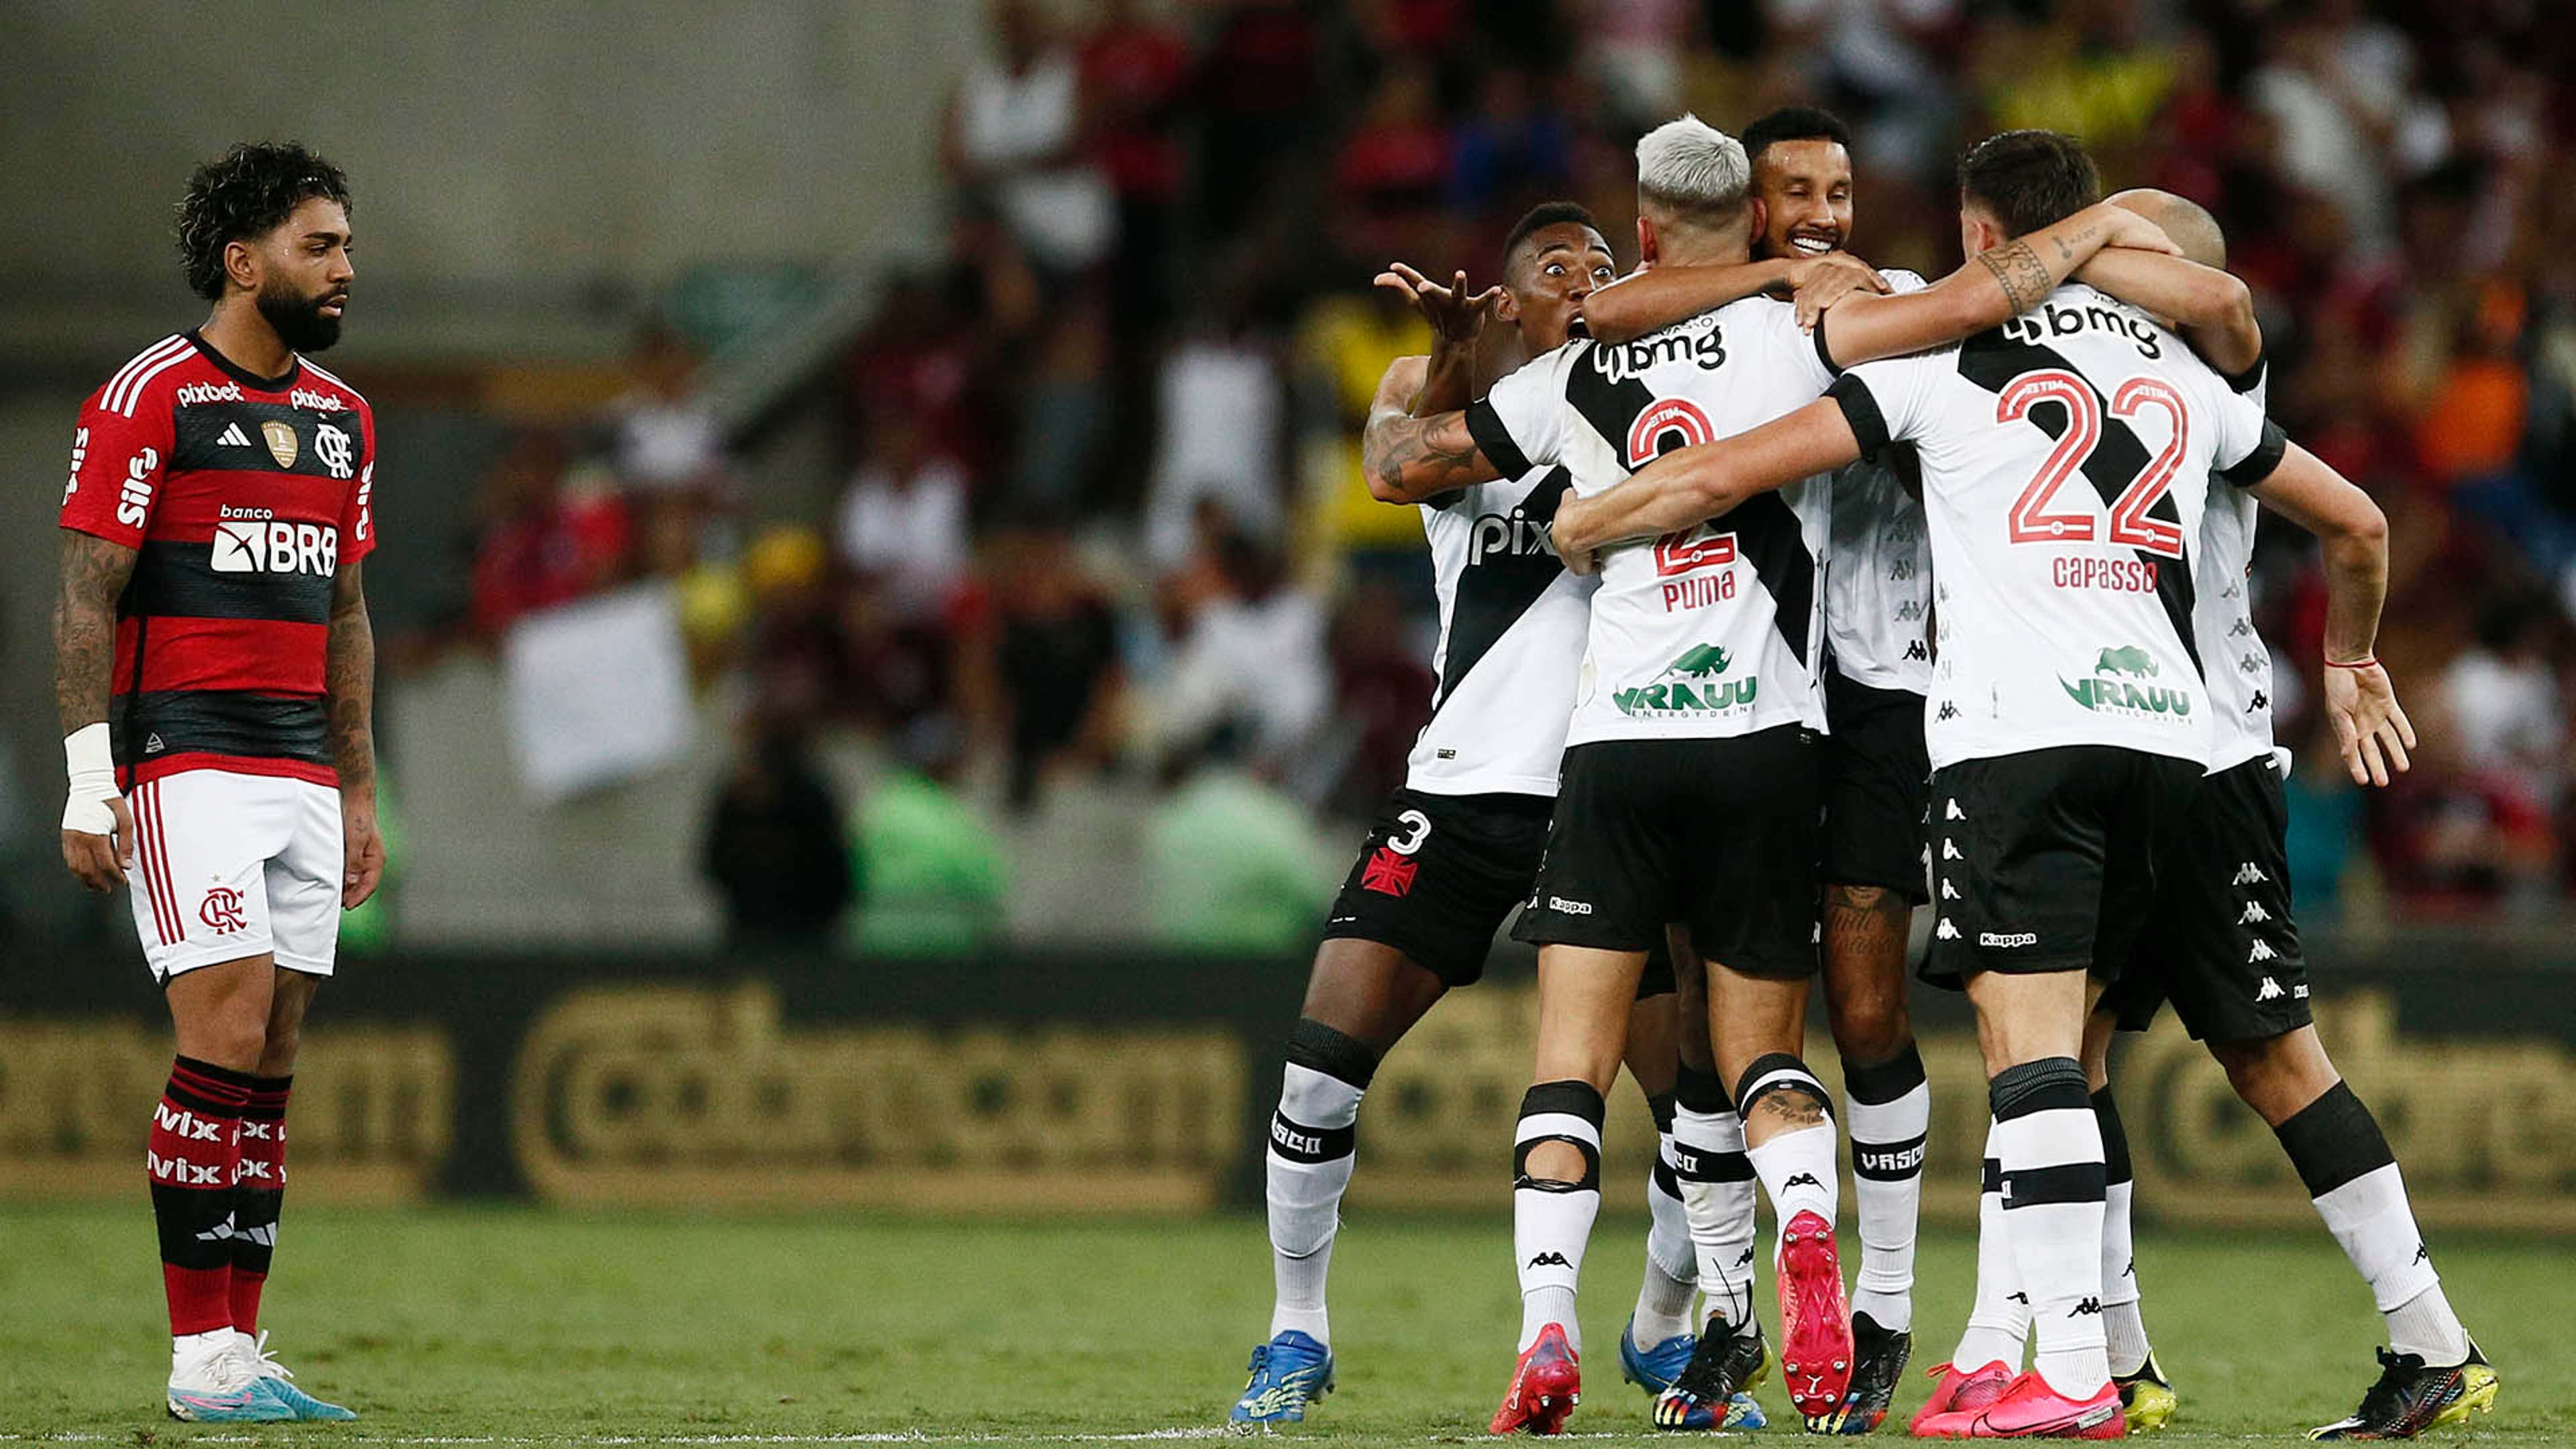 Onde assistir ao vivo o jogo do Botafogo hoje, segunda-feira, 13; veja  horário